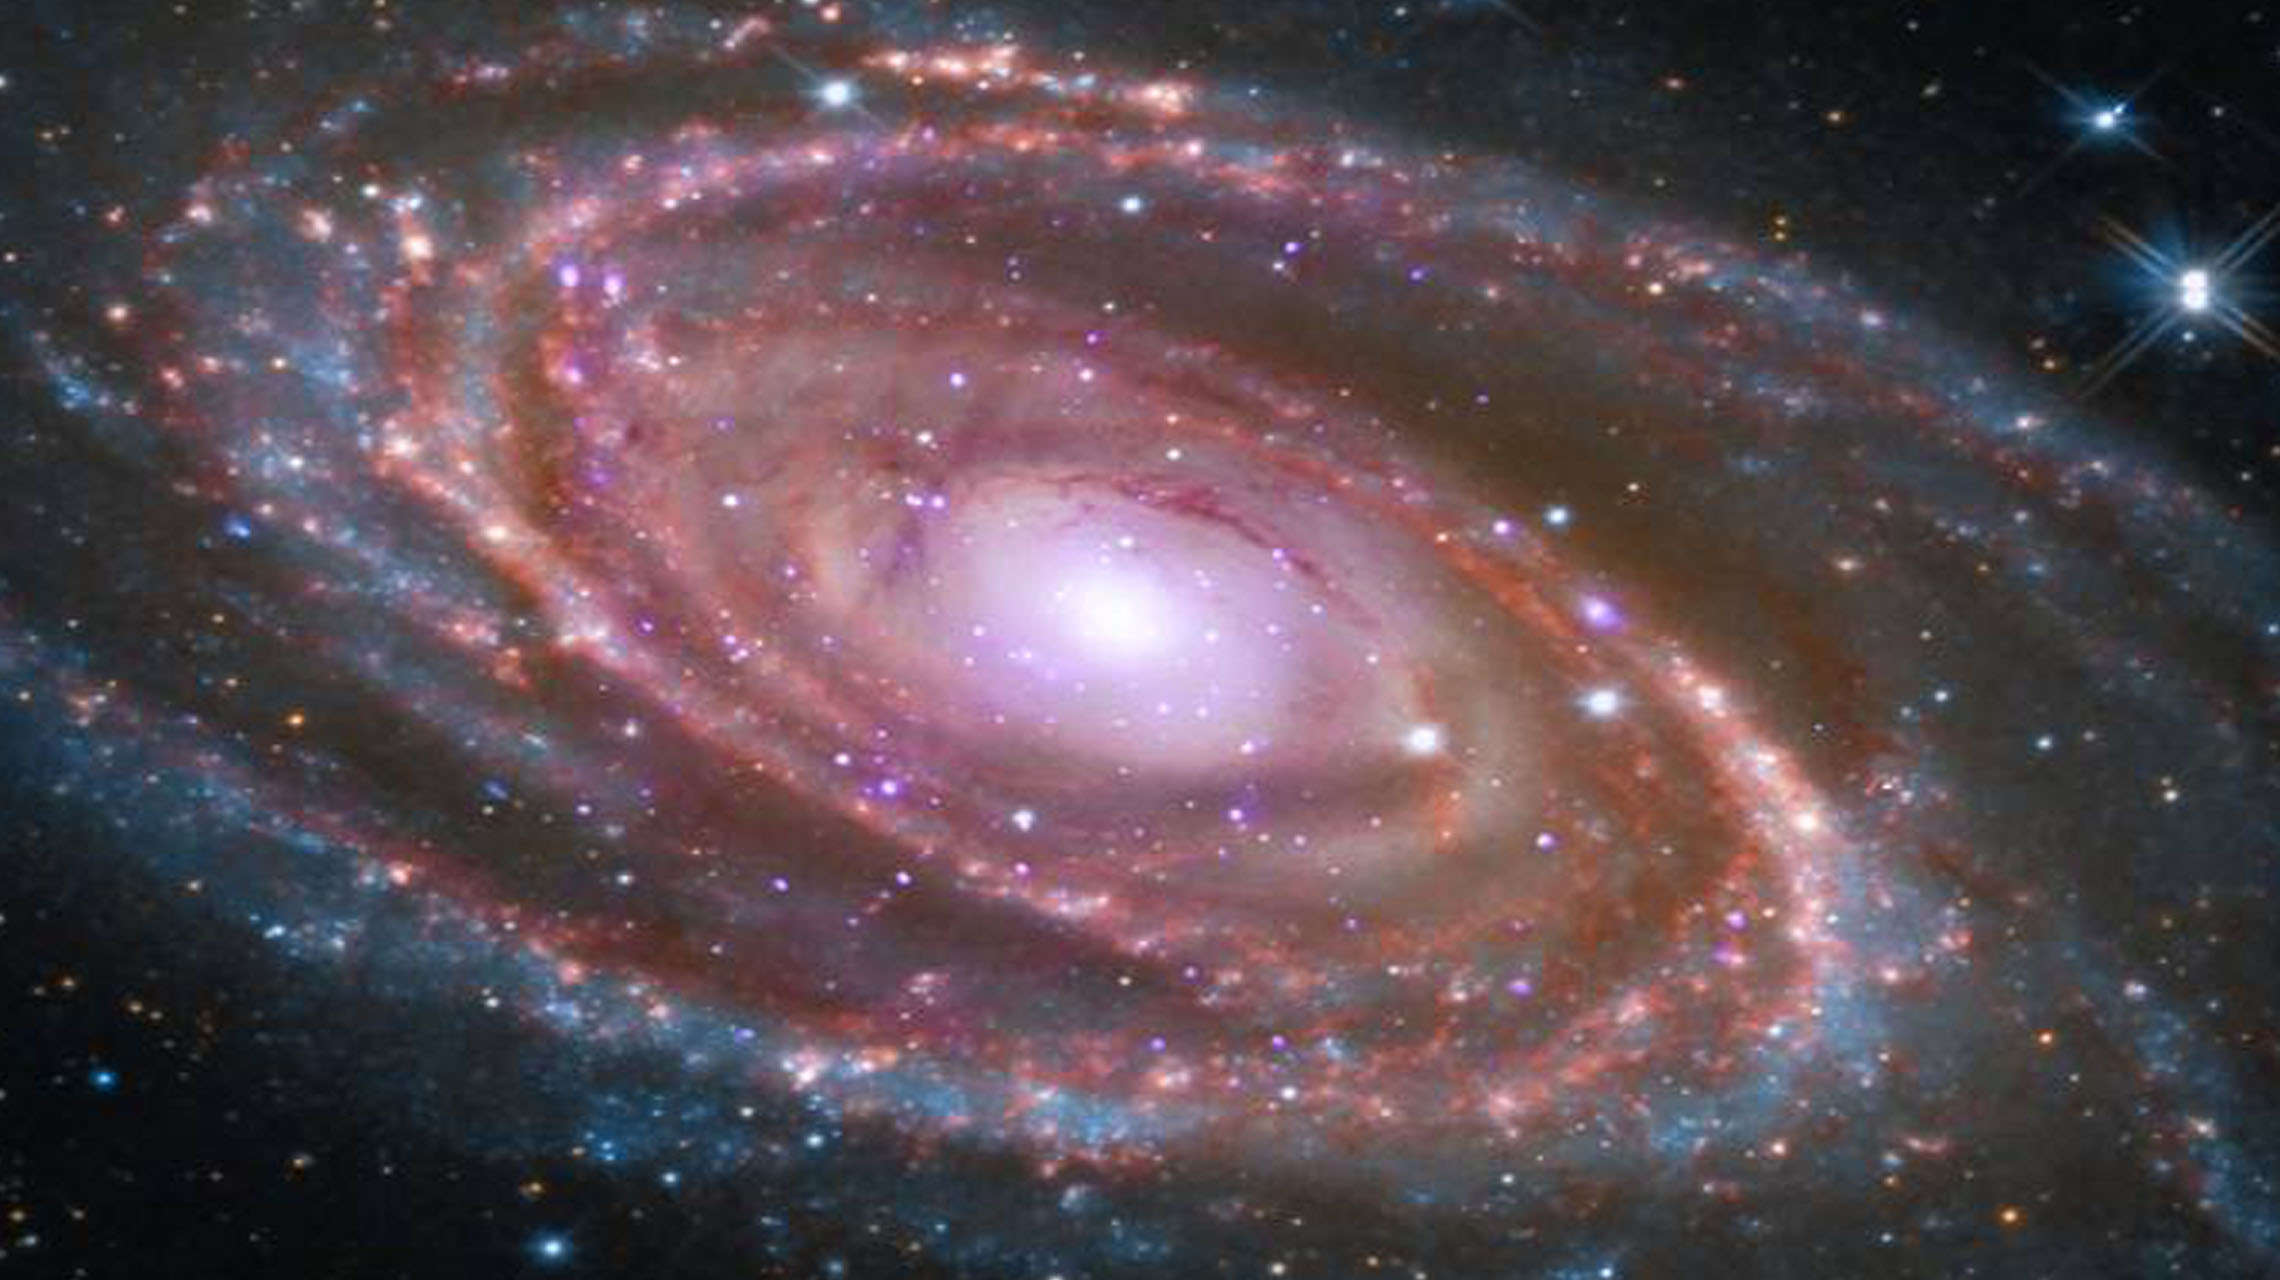 M81 spiral galaxy